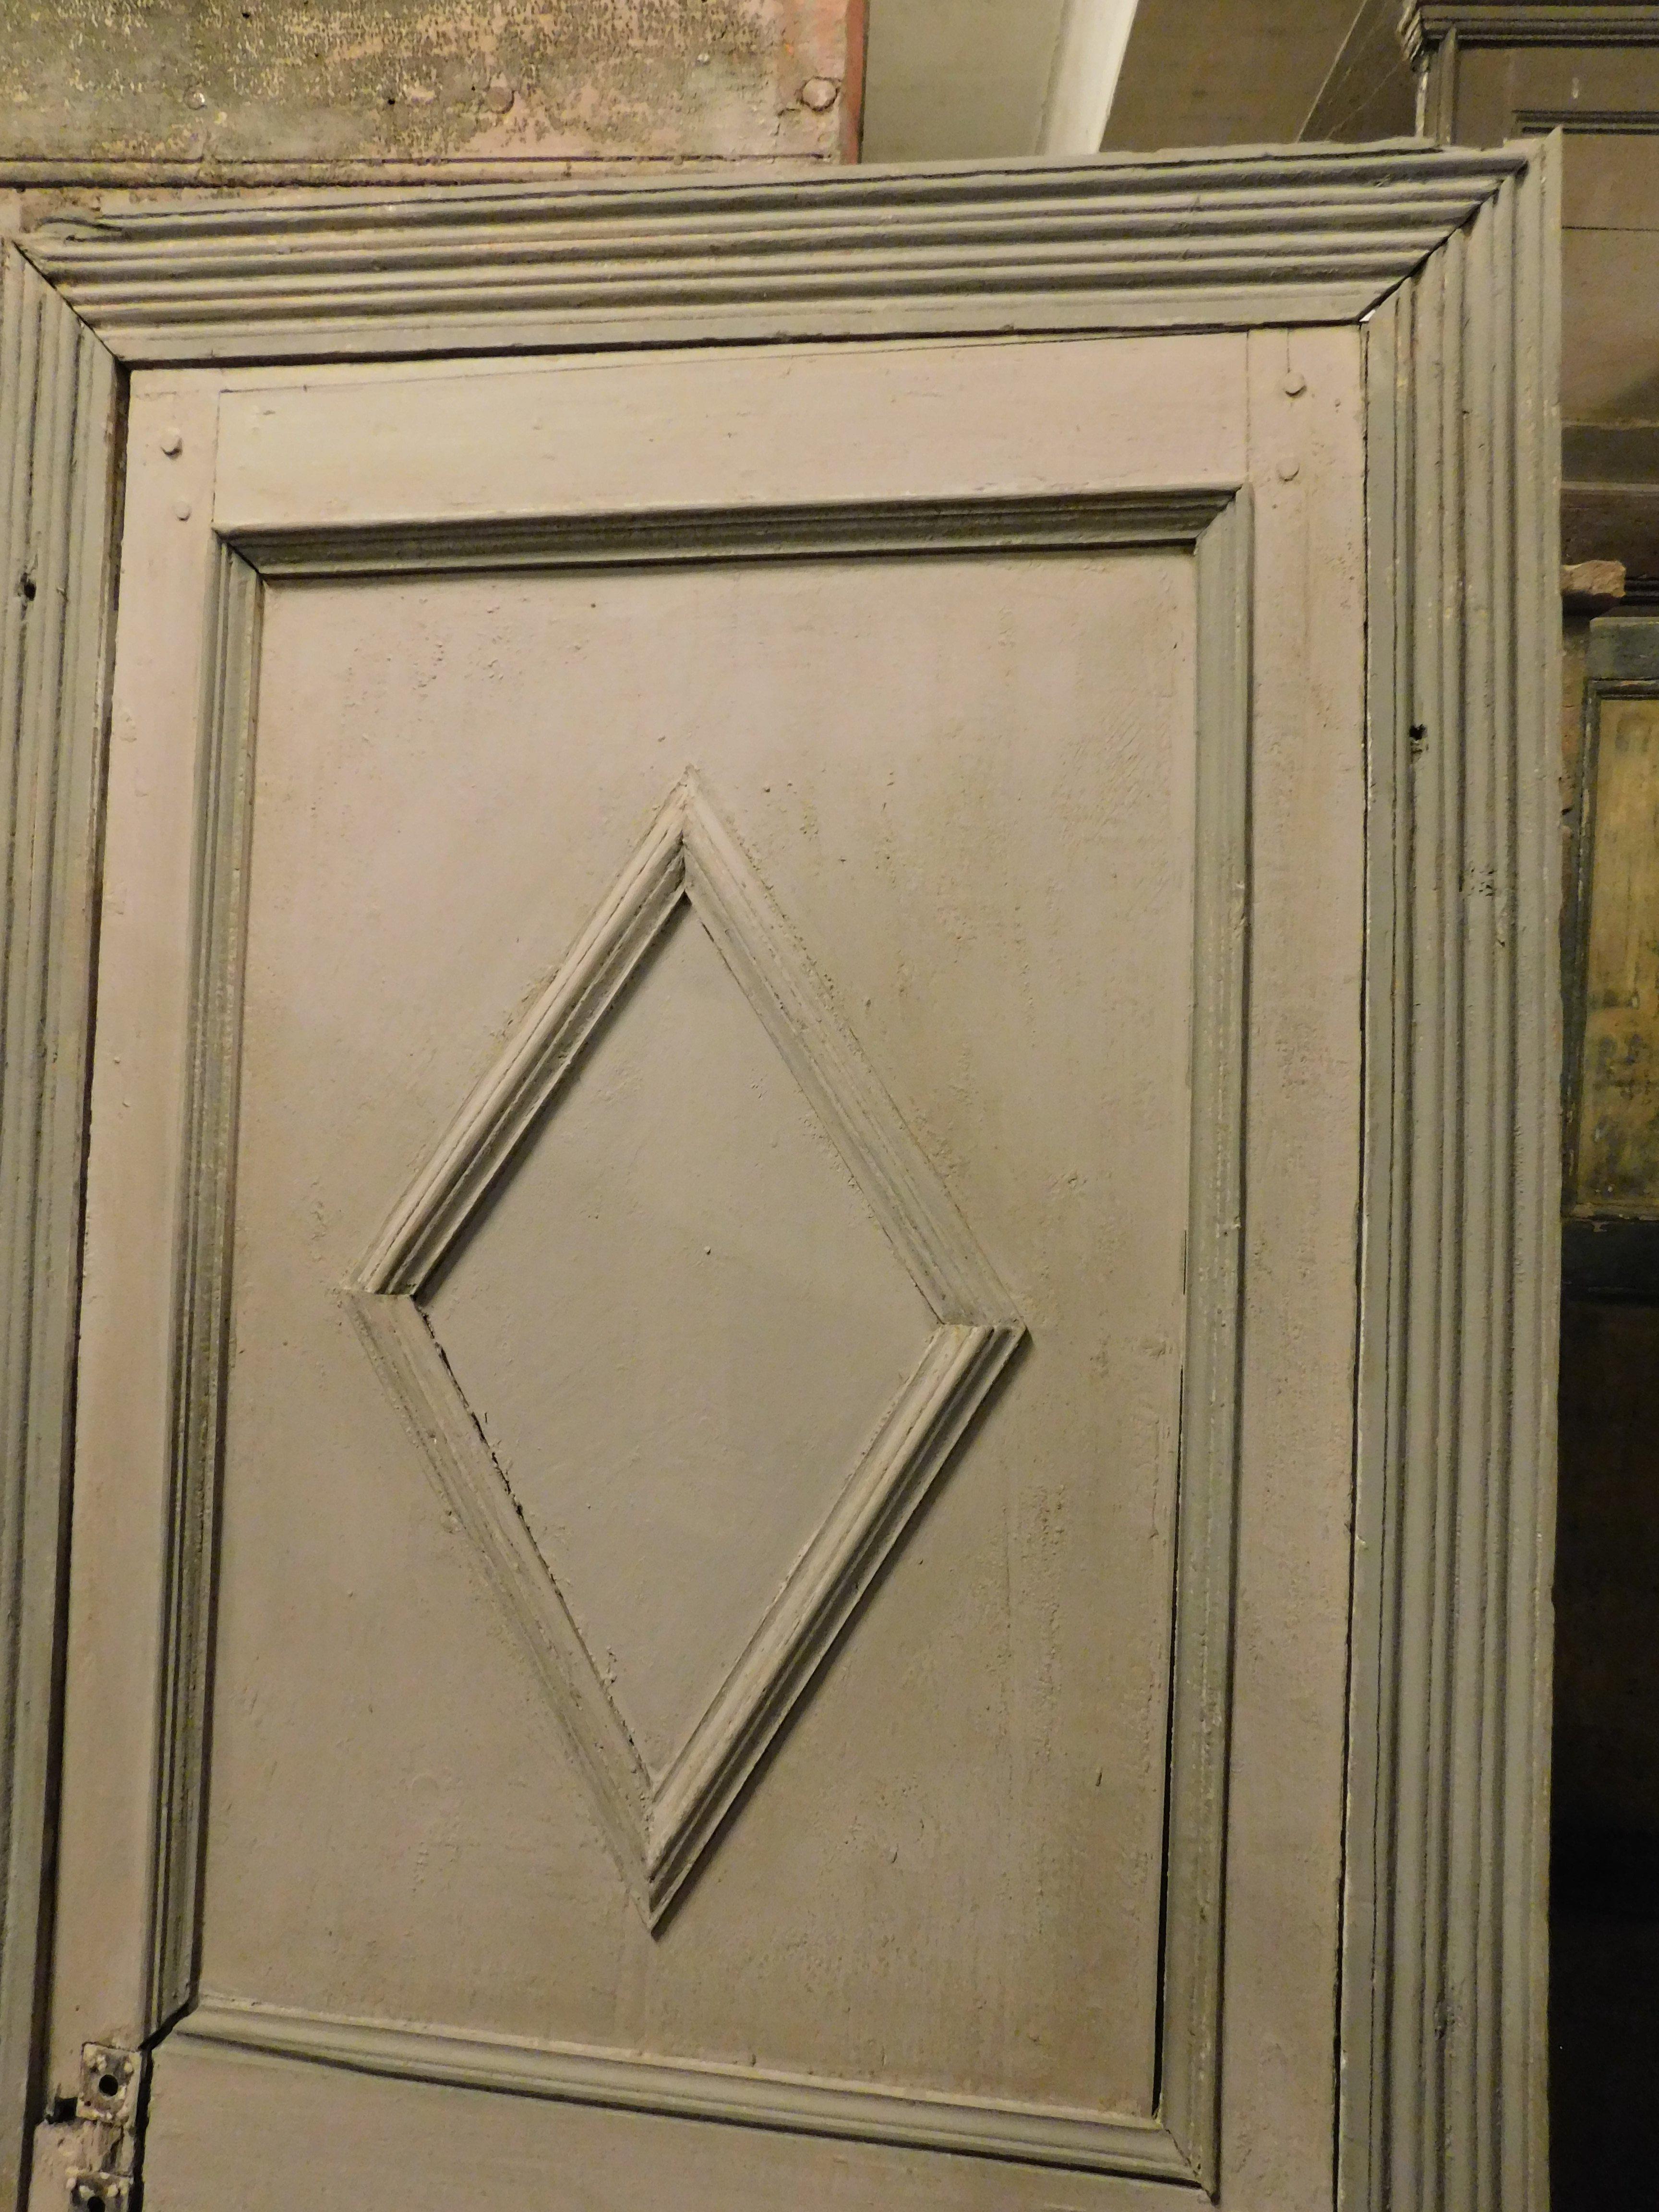 Antike handlackierte Tür mit komplettem Coeval-Rahmen, Paneelen mit reliefiertem Rhombus. Geschnitzte und lackierte Leisten im Kontrast zur Lackierung der Tür. Öffnungsstoß nach rechts, Anfang 1800, aus Nord-/Mittelitalien. Tür mit charmanten ersten